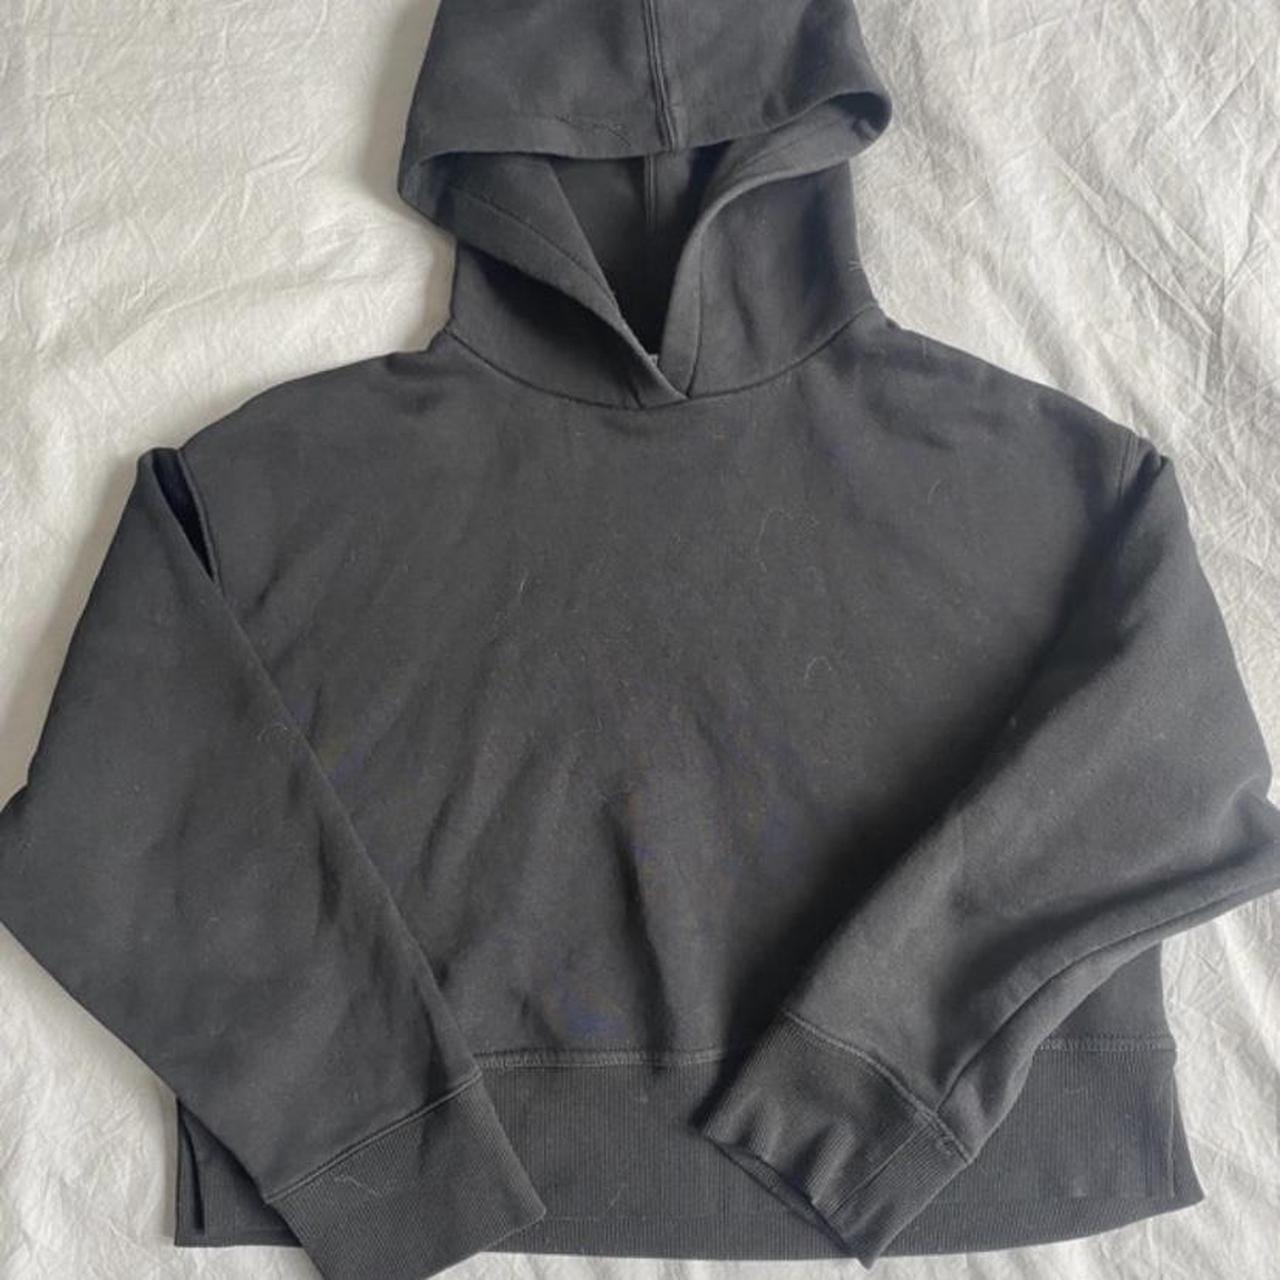 Zara black hoodie Worn once Size small - Depop